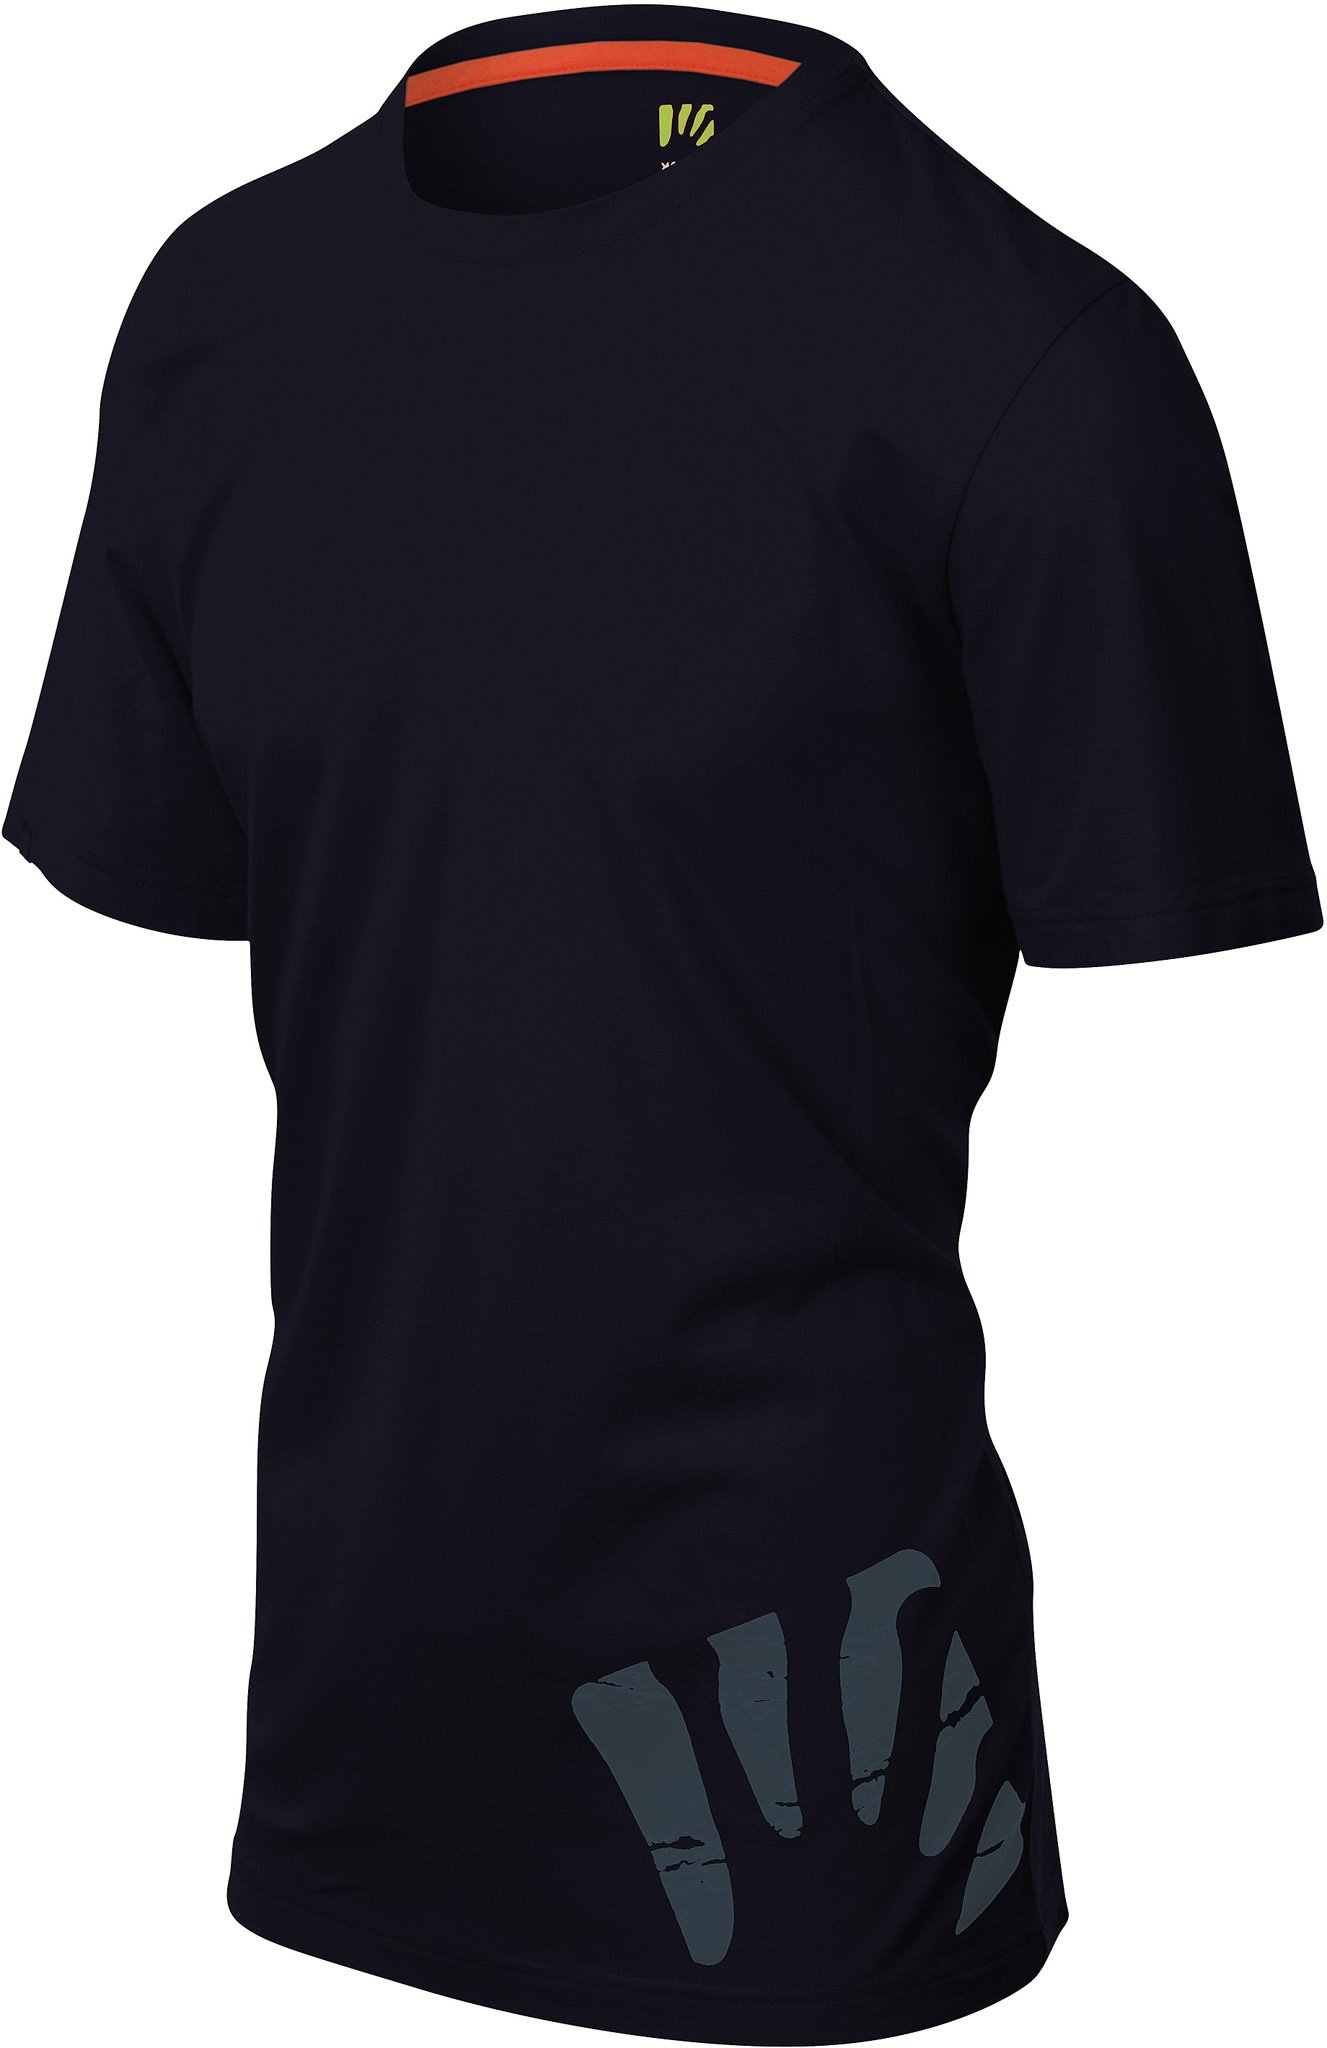 Image de produit pour T-Shirt Astro Alpino - Homme